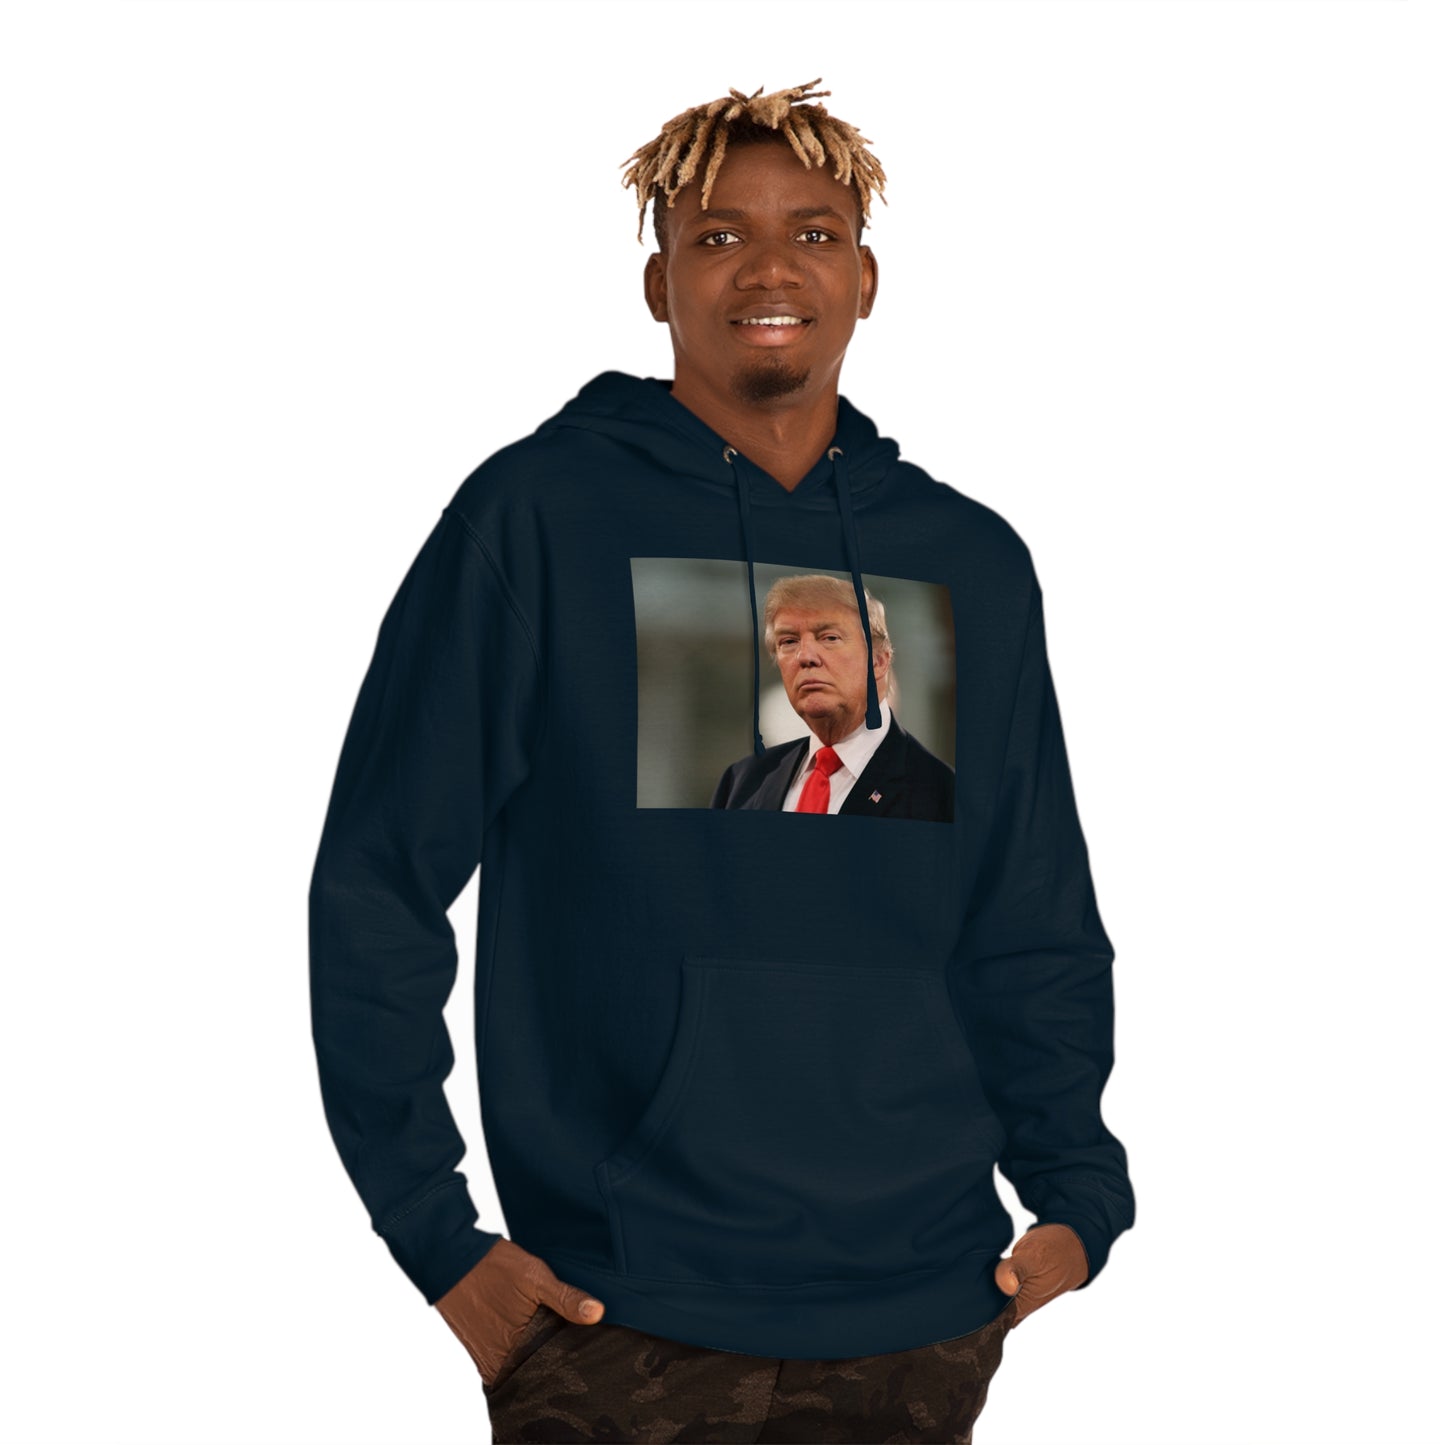 Trump Portrait 2024 weiches und langlebiges Unisex-Kapuzen-Sweatshirt. Wählen Sie Farbe und Größe